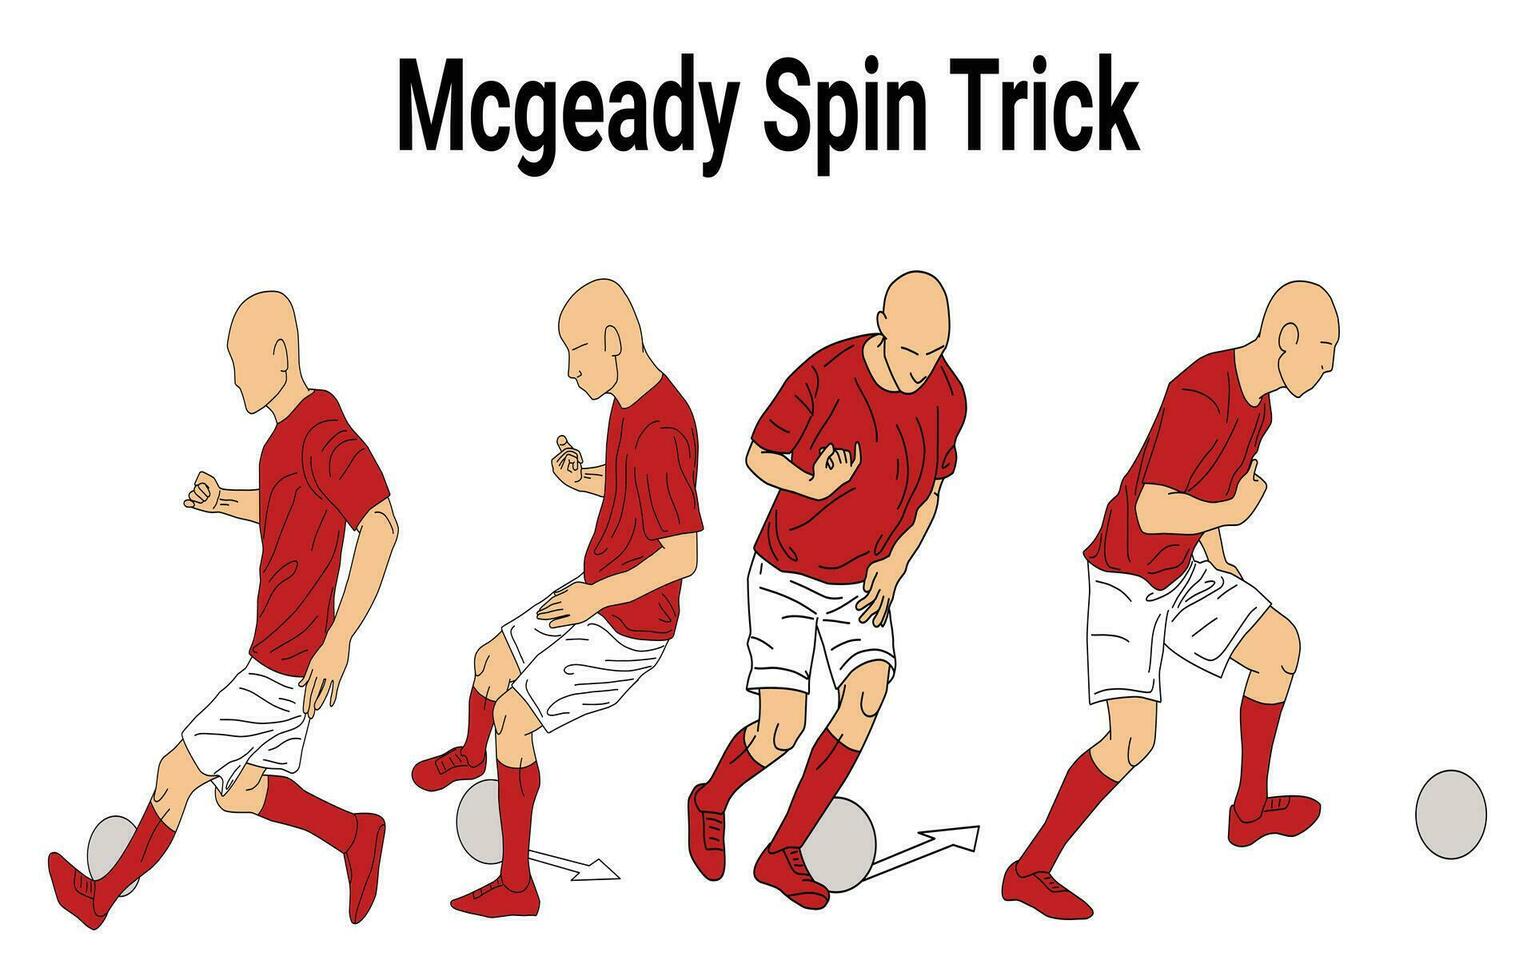 mcgeady girar truco imágenes para fútbol americano Deportes educación, adecuado para Deportes libros, Deportes manuales, Deportes aplicaciones y otros vector